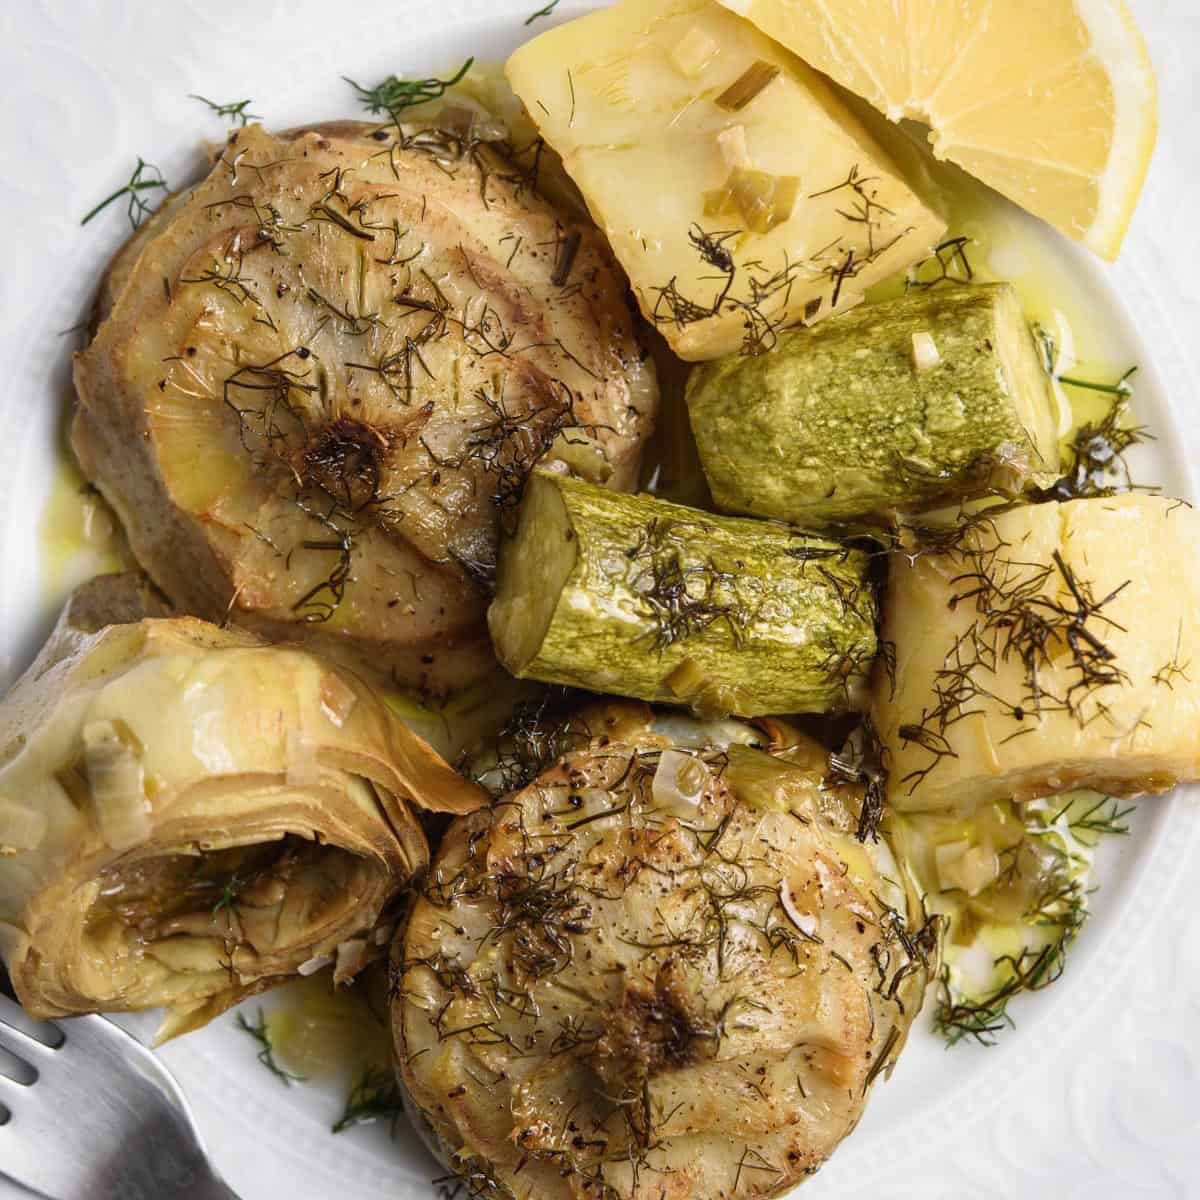 Alcachofas y patatas asadas. De realgreekrecipes.com/baked-artichok… #Cocina_griega Καλή όρεξη! #ieda